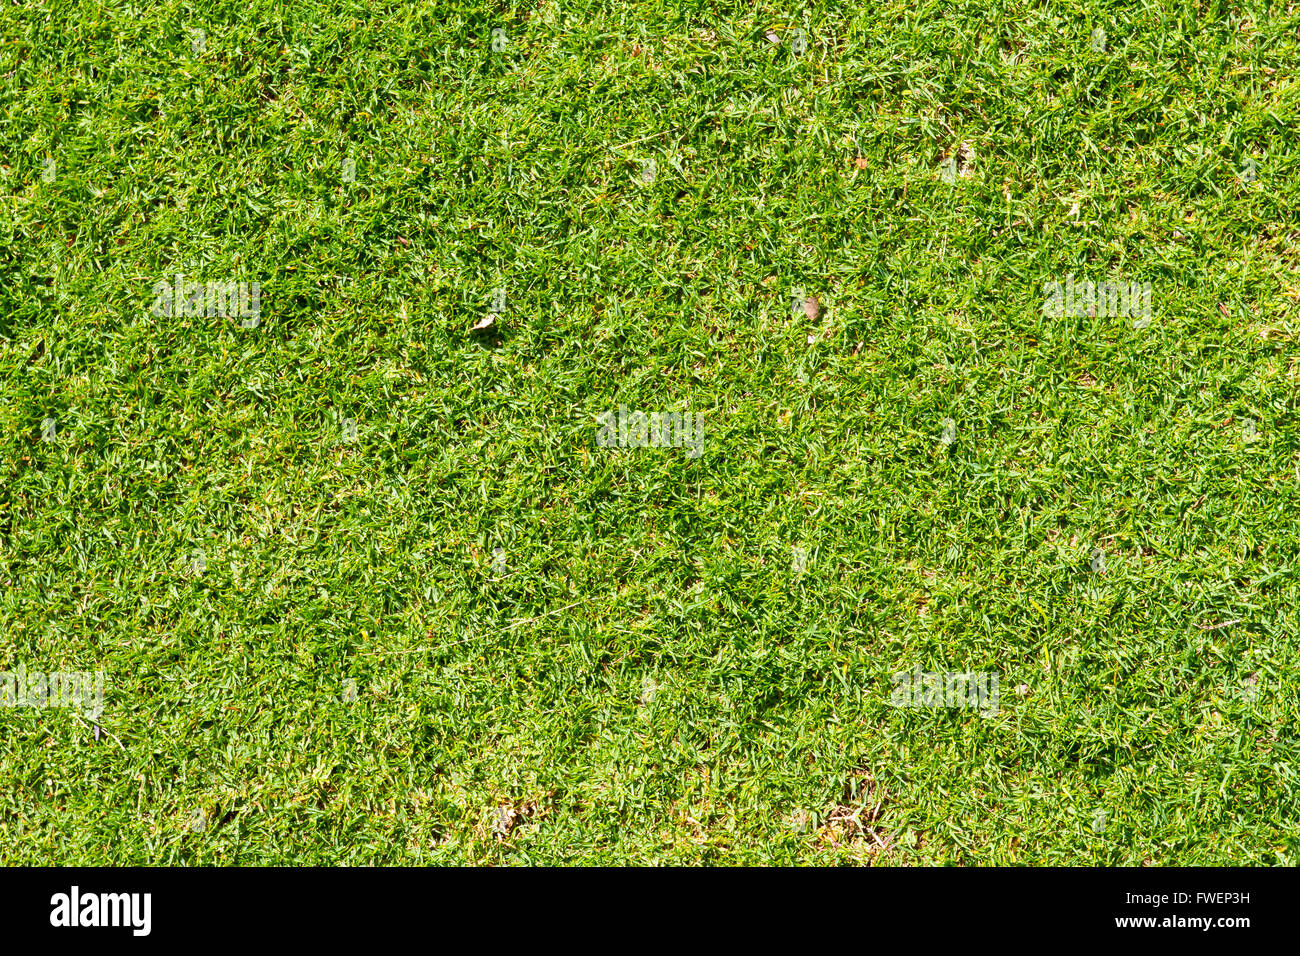 Questa immagine astratta mostra alcuni verde tropicale erba corta e niente altro in una natura dettaglio foto di texture. Foto Stock